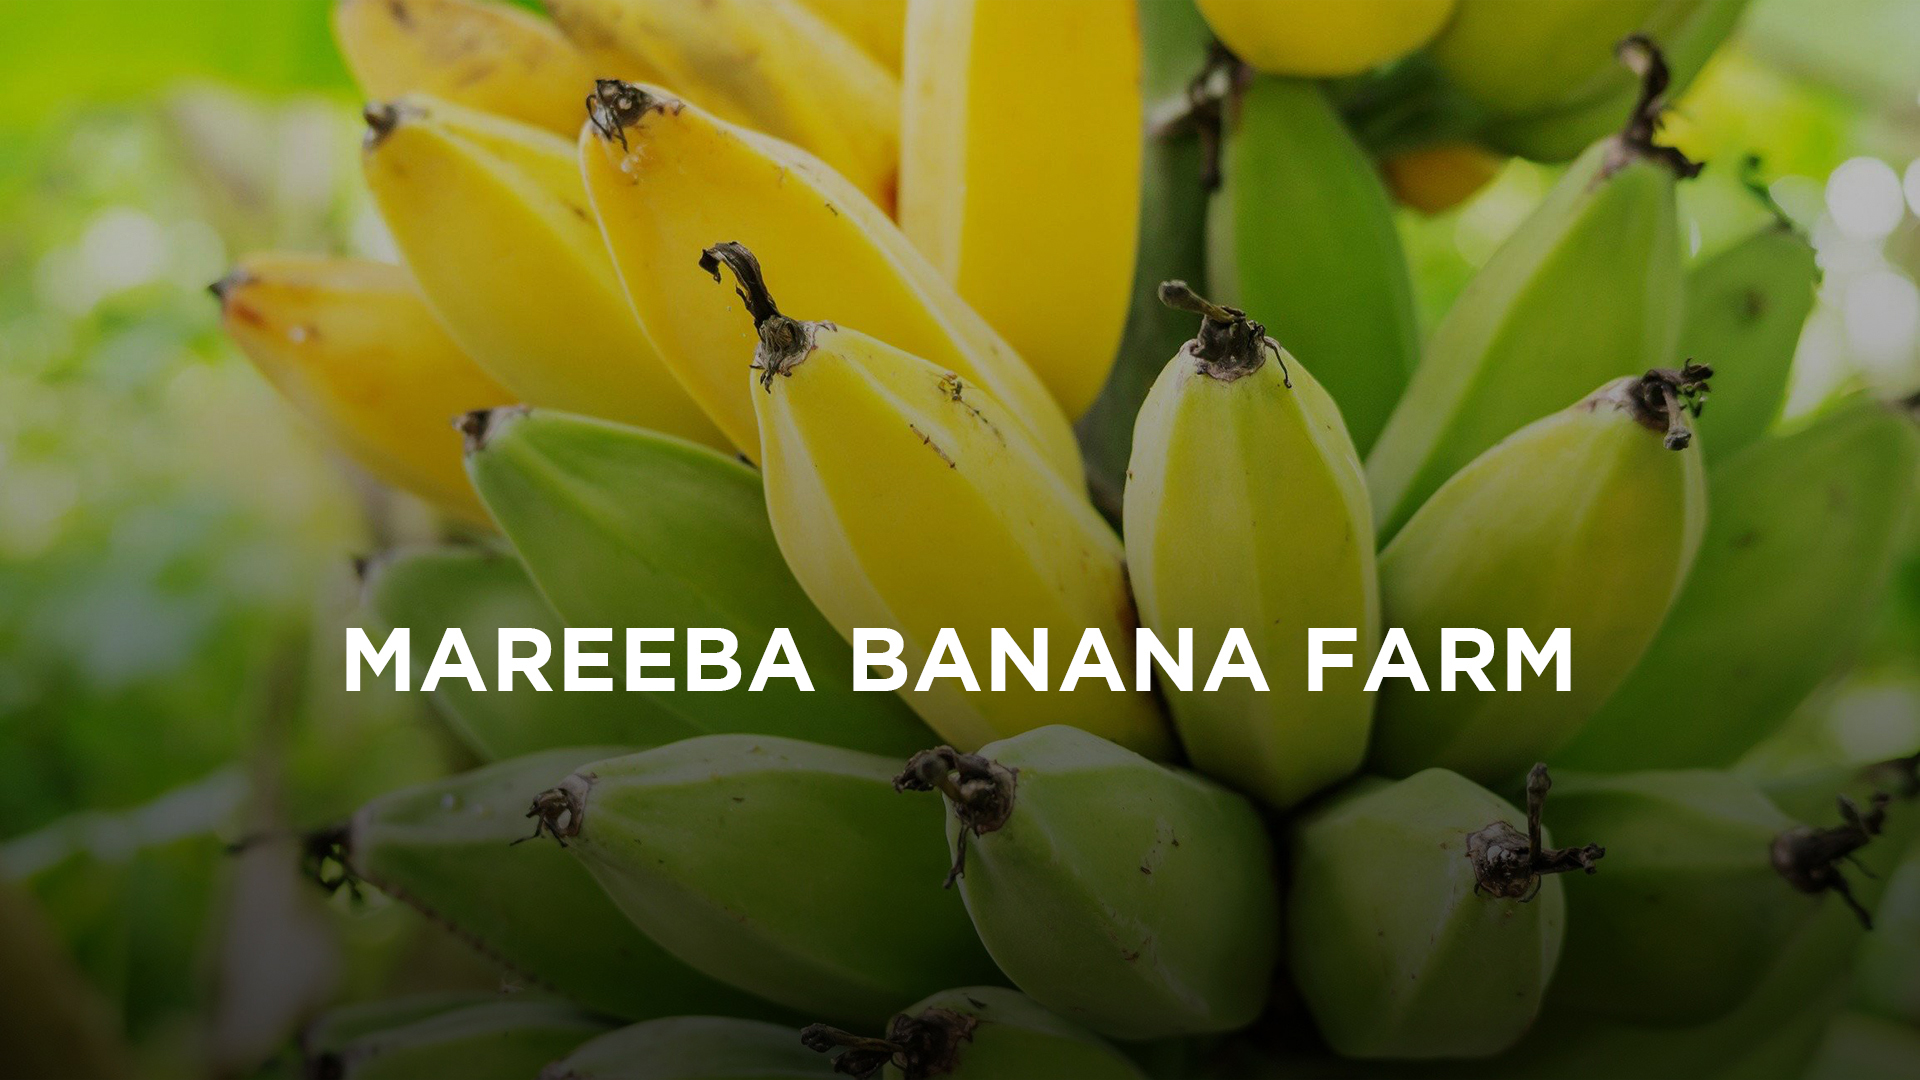 Banana background with Mareeba Banana Farm written over the top